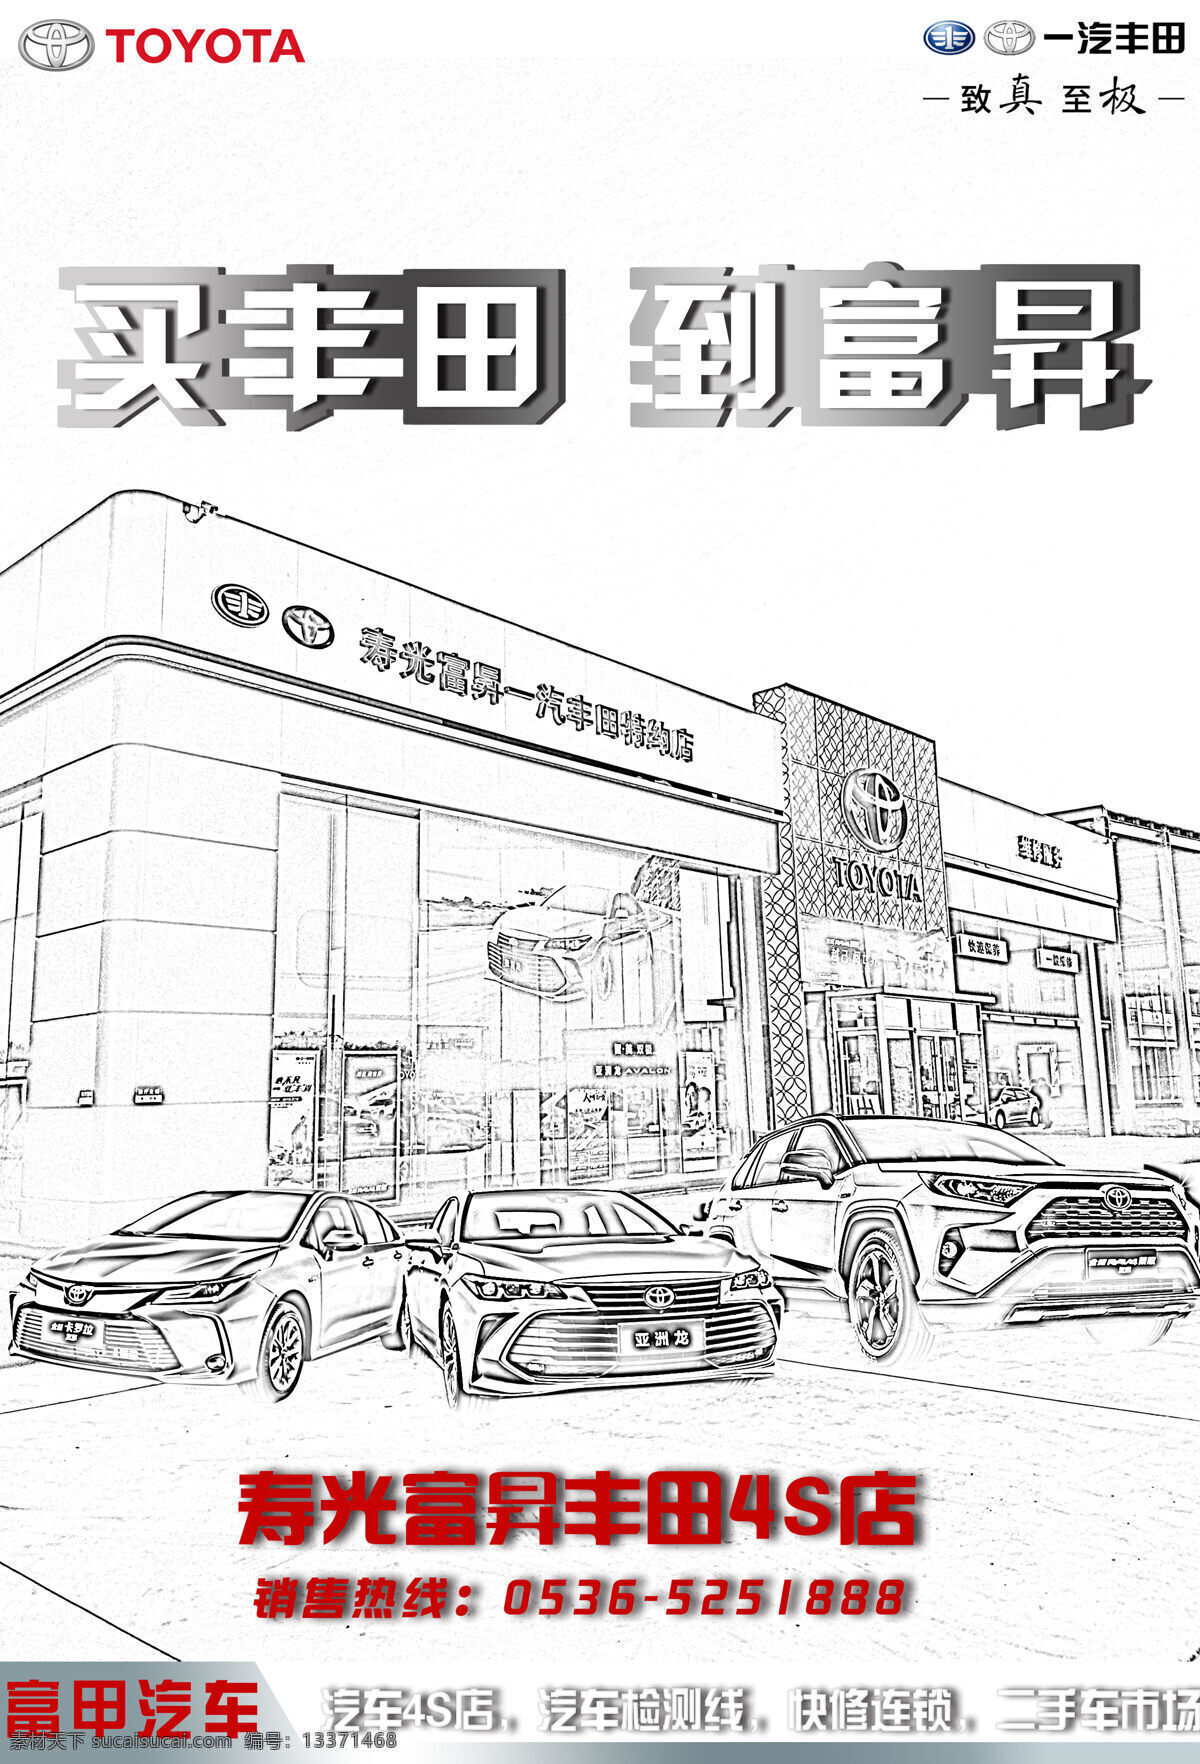 丰田图片 威驰 丰田 市场 喷绘 写真